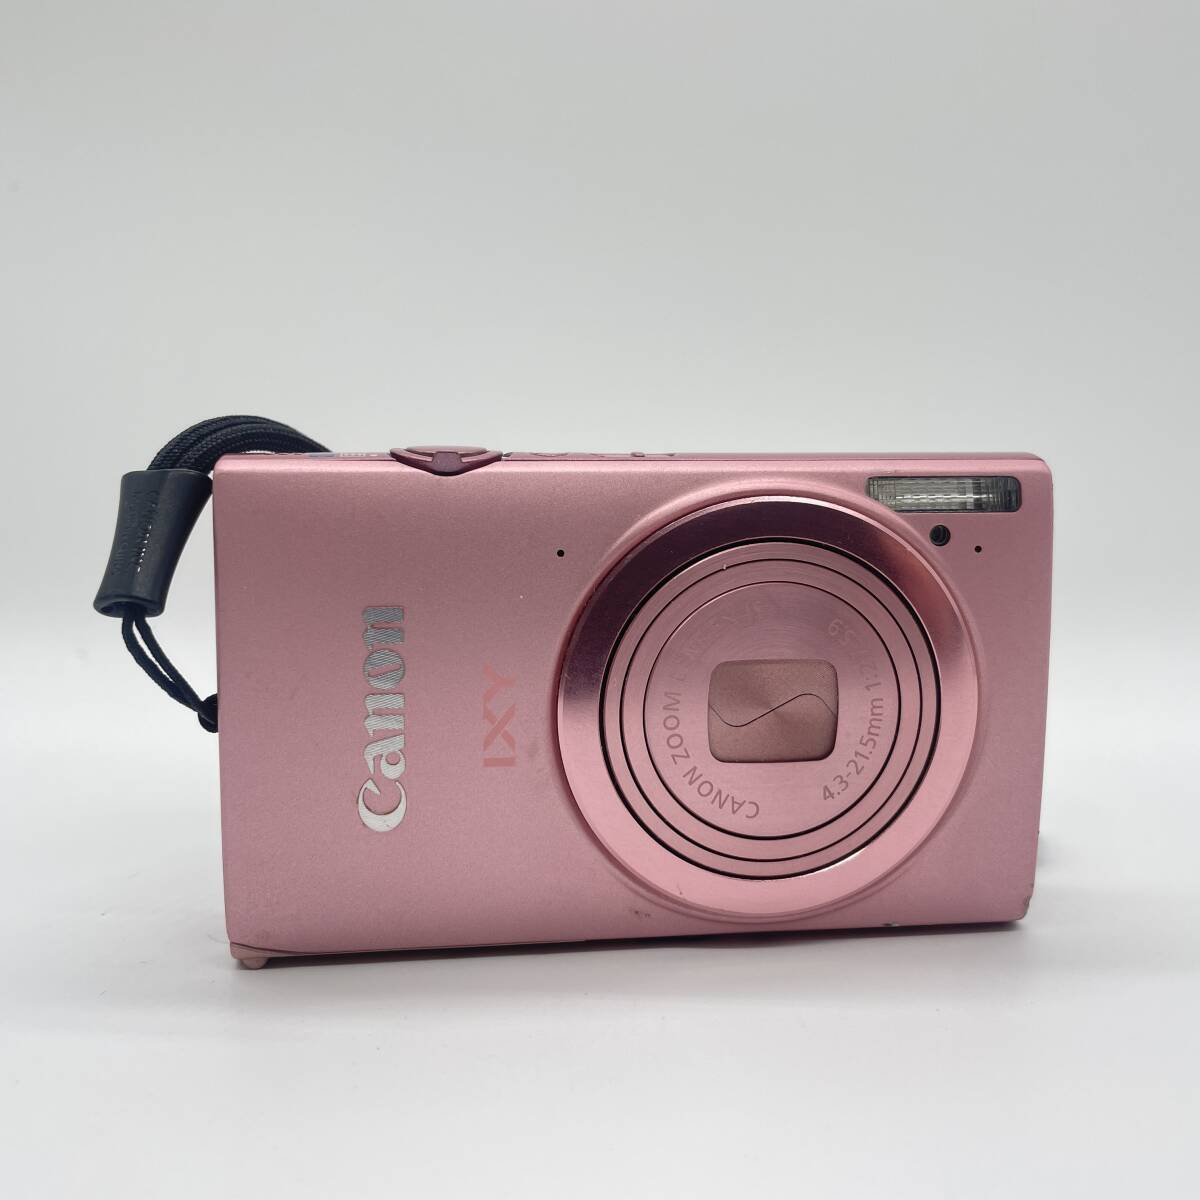 【動作確認済み】Canon IXY 430F PINK コンデジ デジカメ デジタルカメラ シャッター&フラッシュ動作OKの画像4